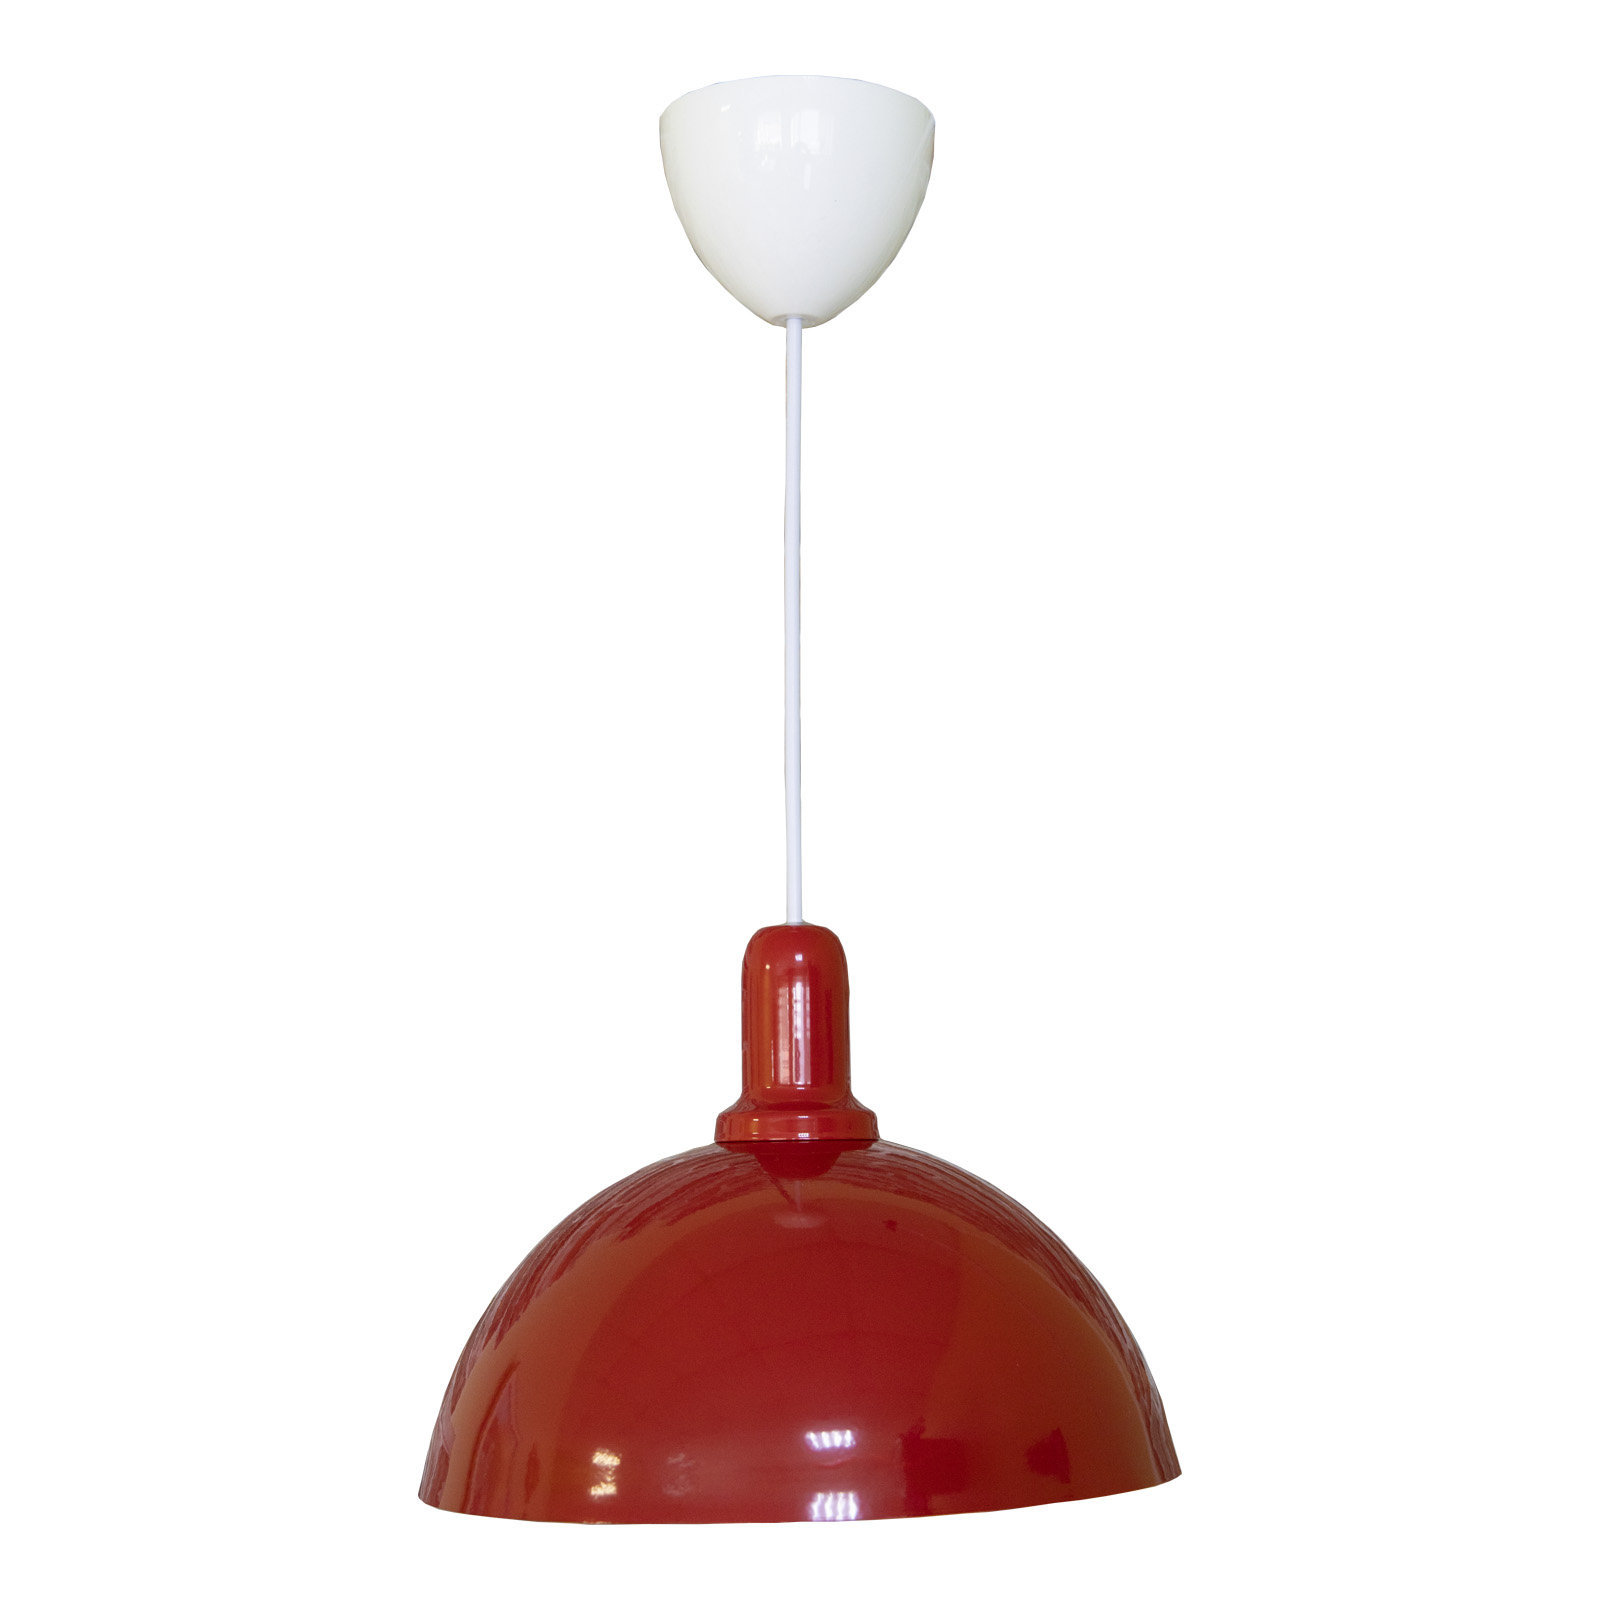 Подвесной светильник Maesta, Арт. MA-2511/1-R, E27, 40 Вт., кол-во ламп: 1 шт.цвет красный